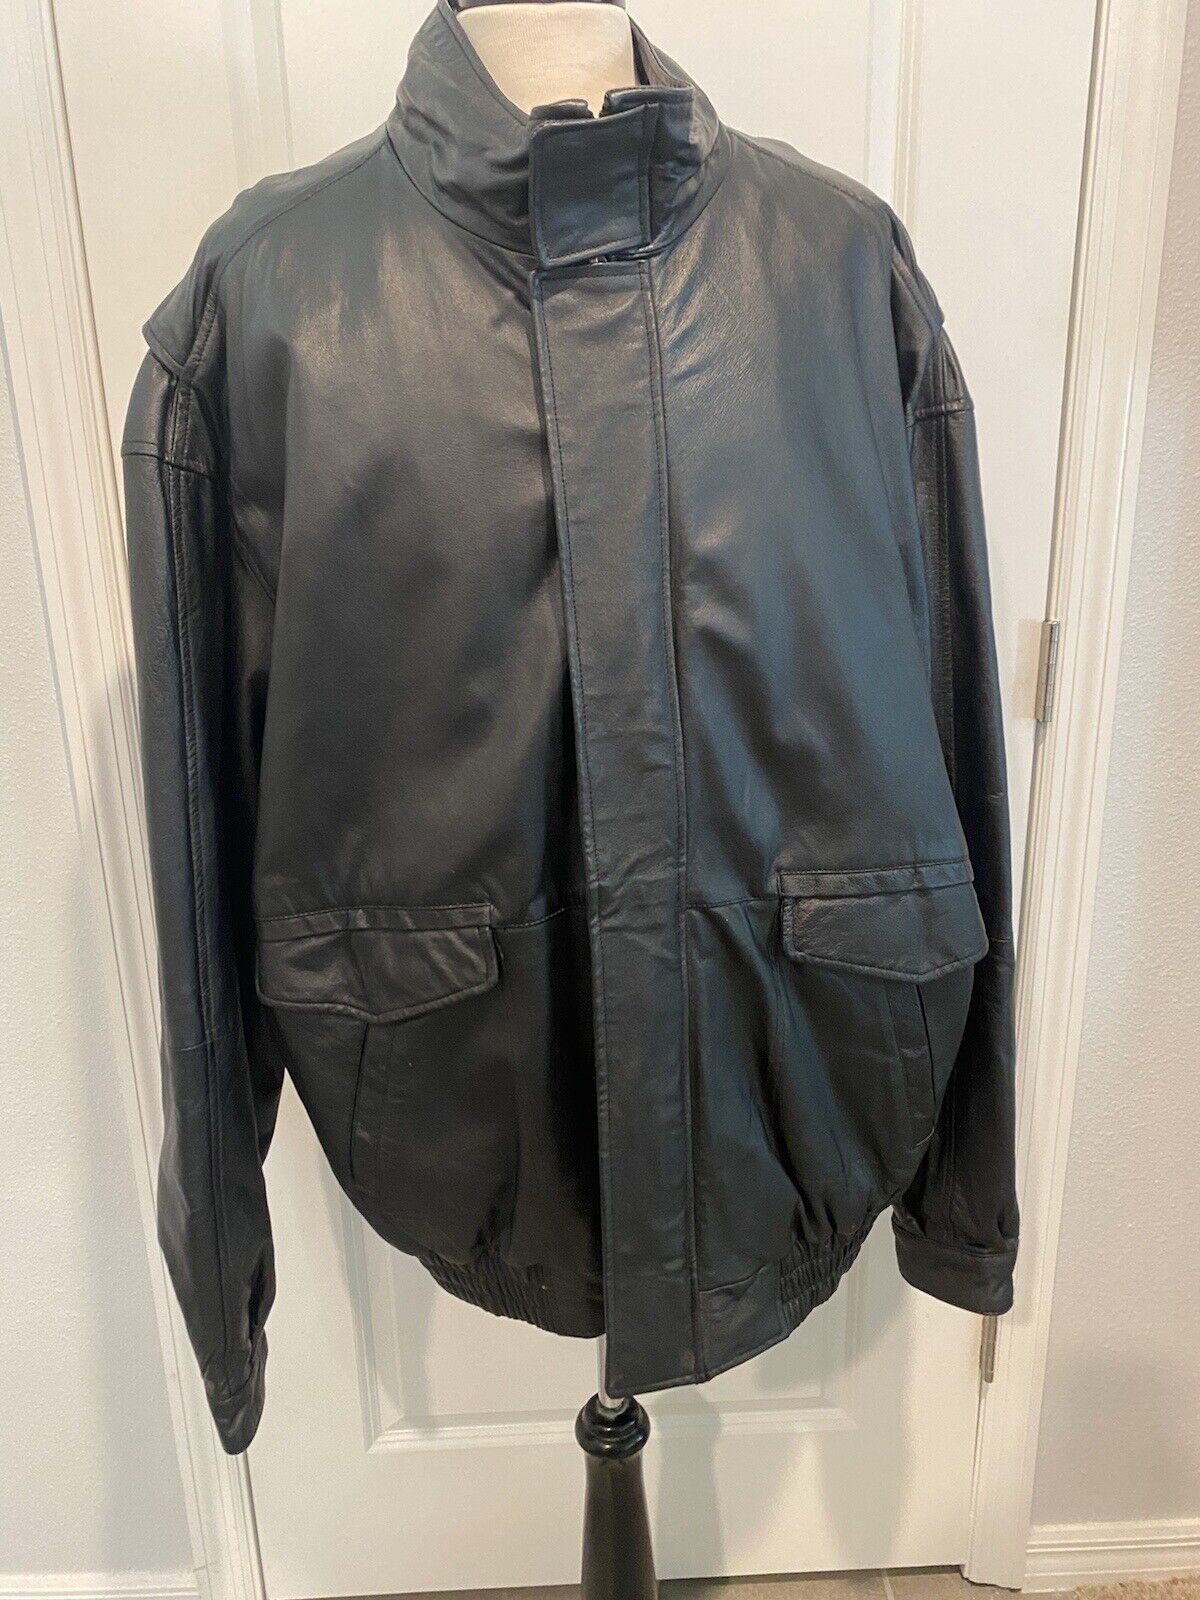 Global Identity Black Leather G-III Jacket Coat M… - image 1